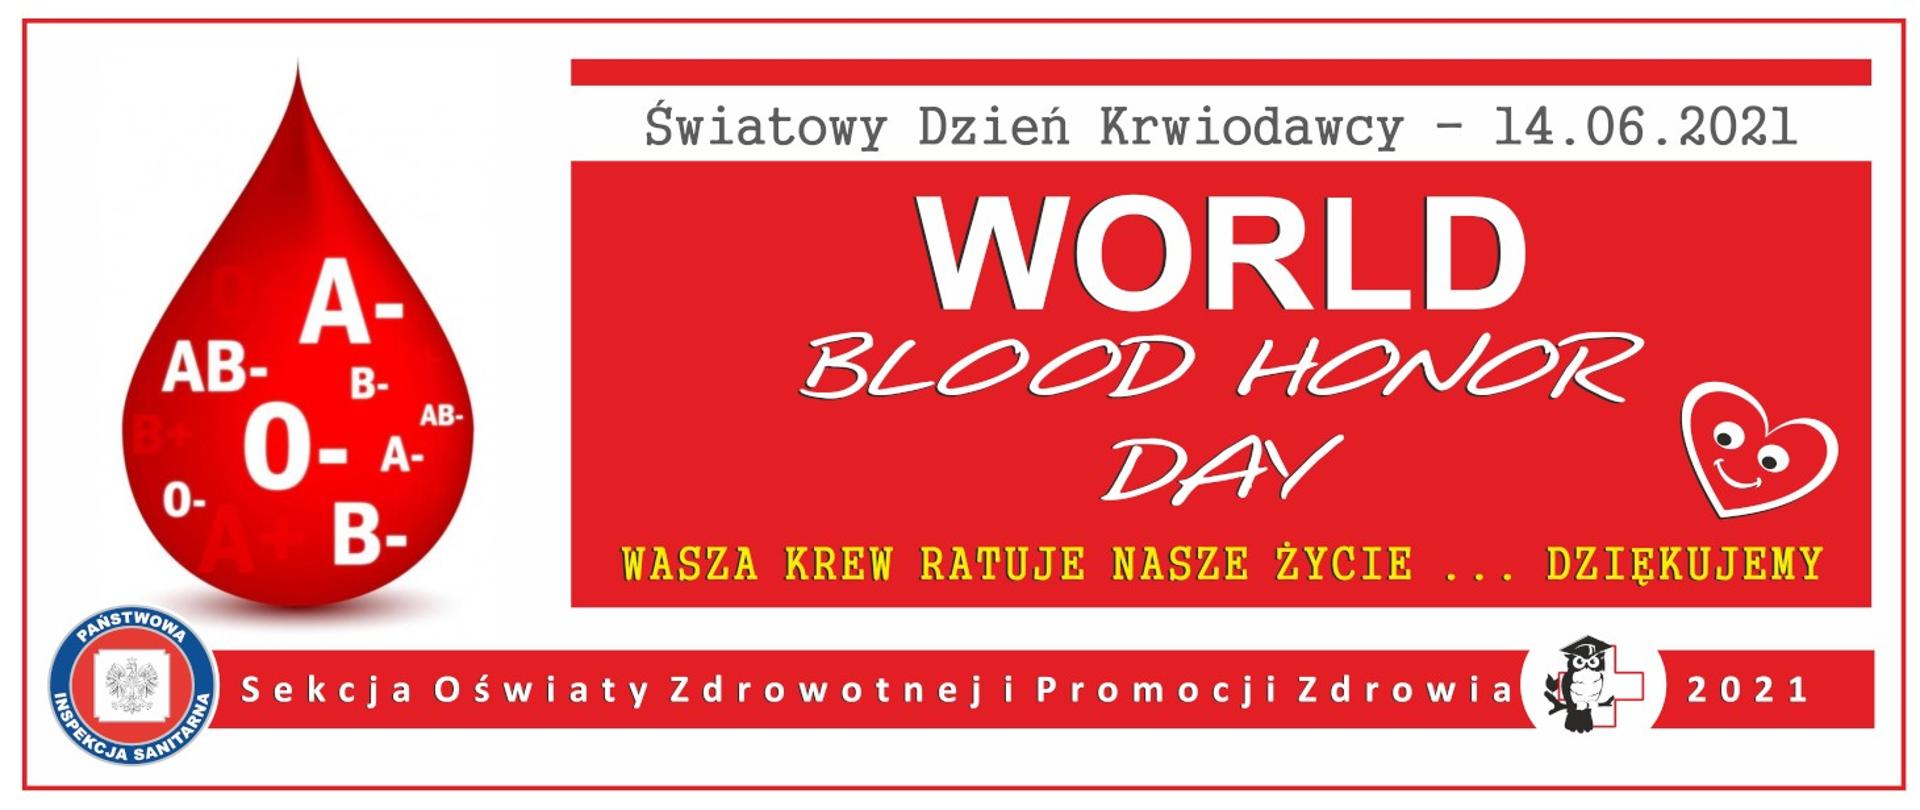 Światowy Dzień Krwiodawcy - 14.06.2021